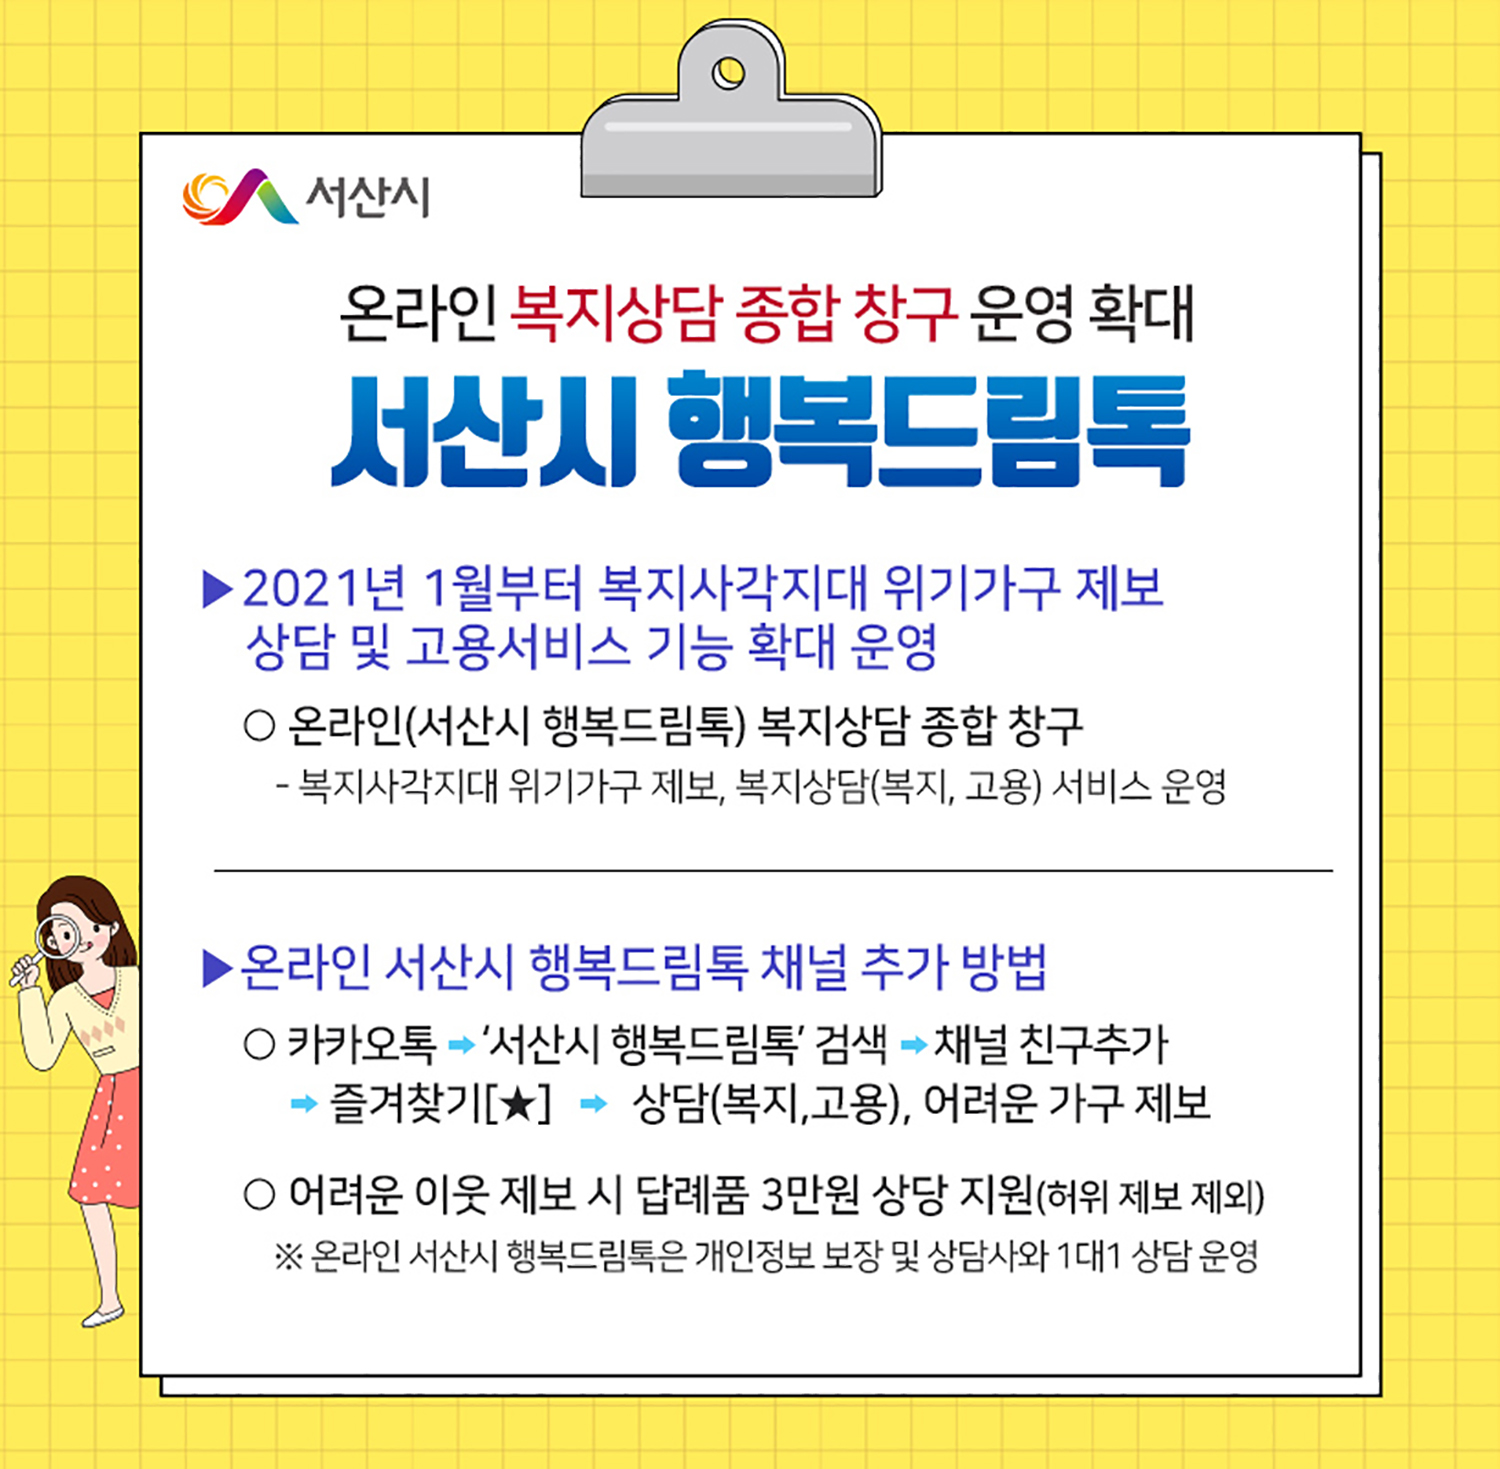 서산시 행복드림톡, 온라인 복지창구 역할 톡톡!